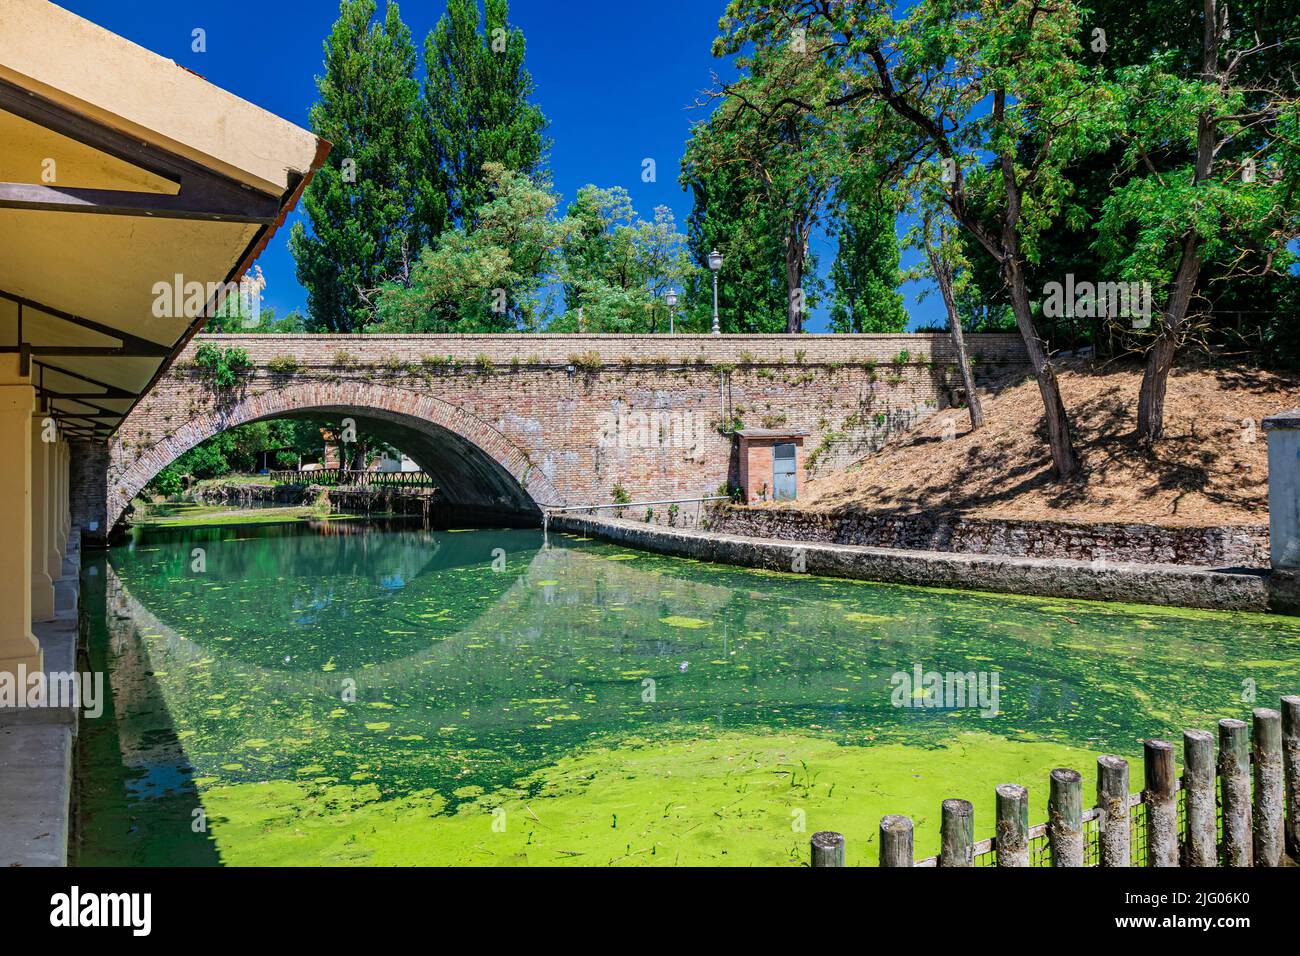 Das alte Waschhaus und die gemauerte Brücke über den Fluss, im mittelalterlichen Dorf Bevagna. Perugia, Umbrien. Blauer Himmel an einem sonnigen Sommertag. Gre Stockfoto